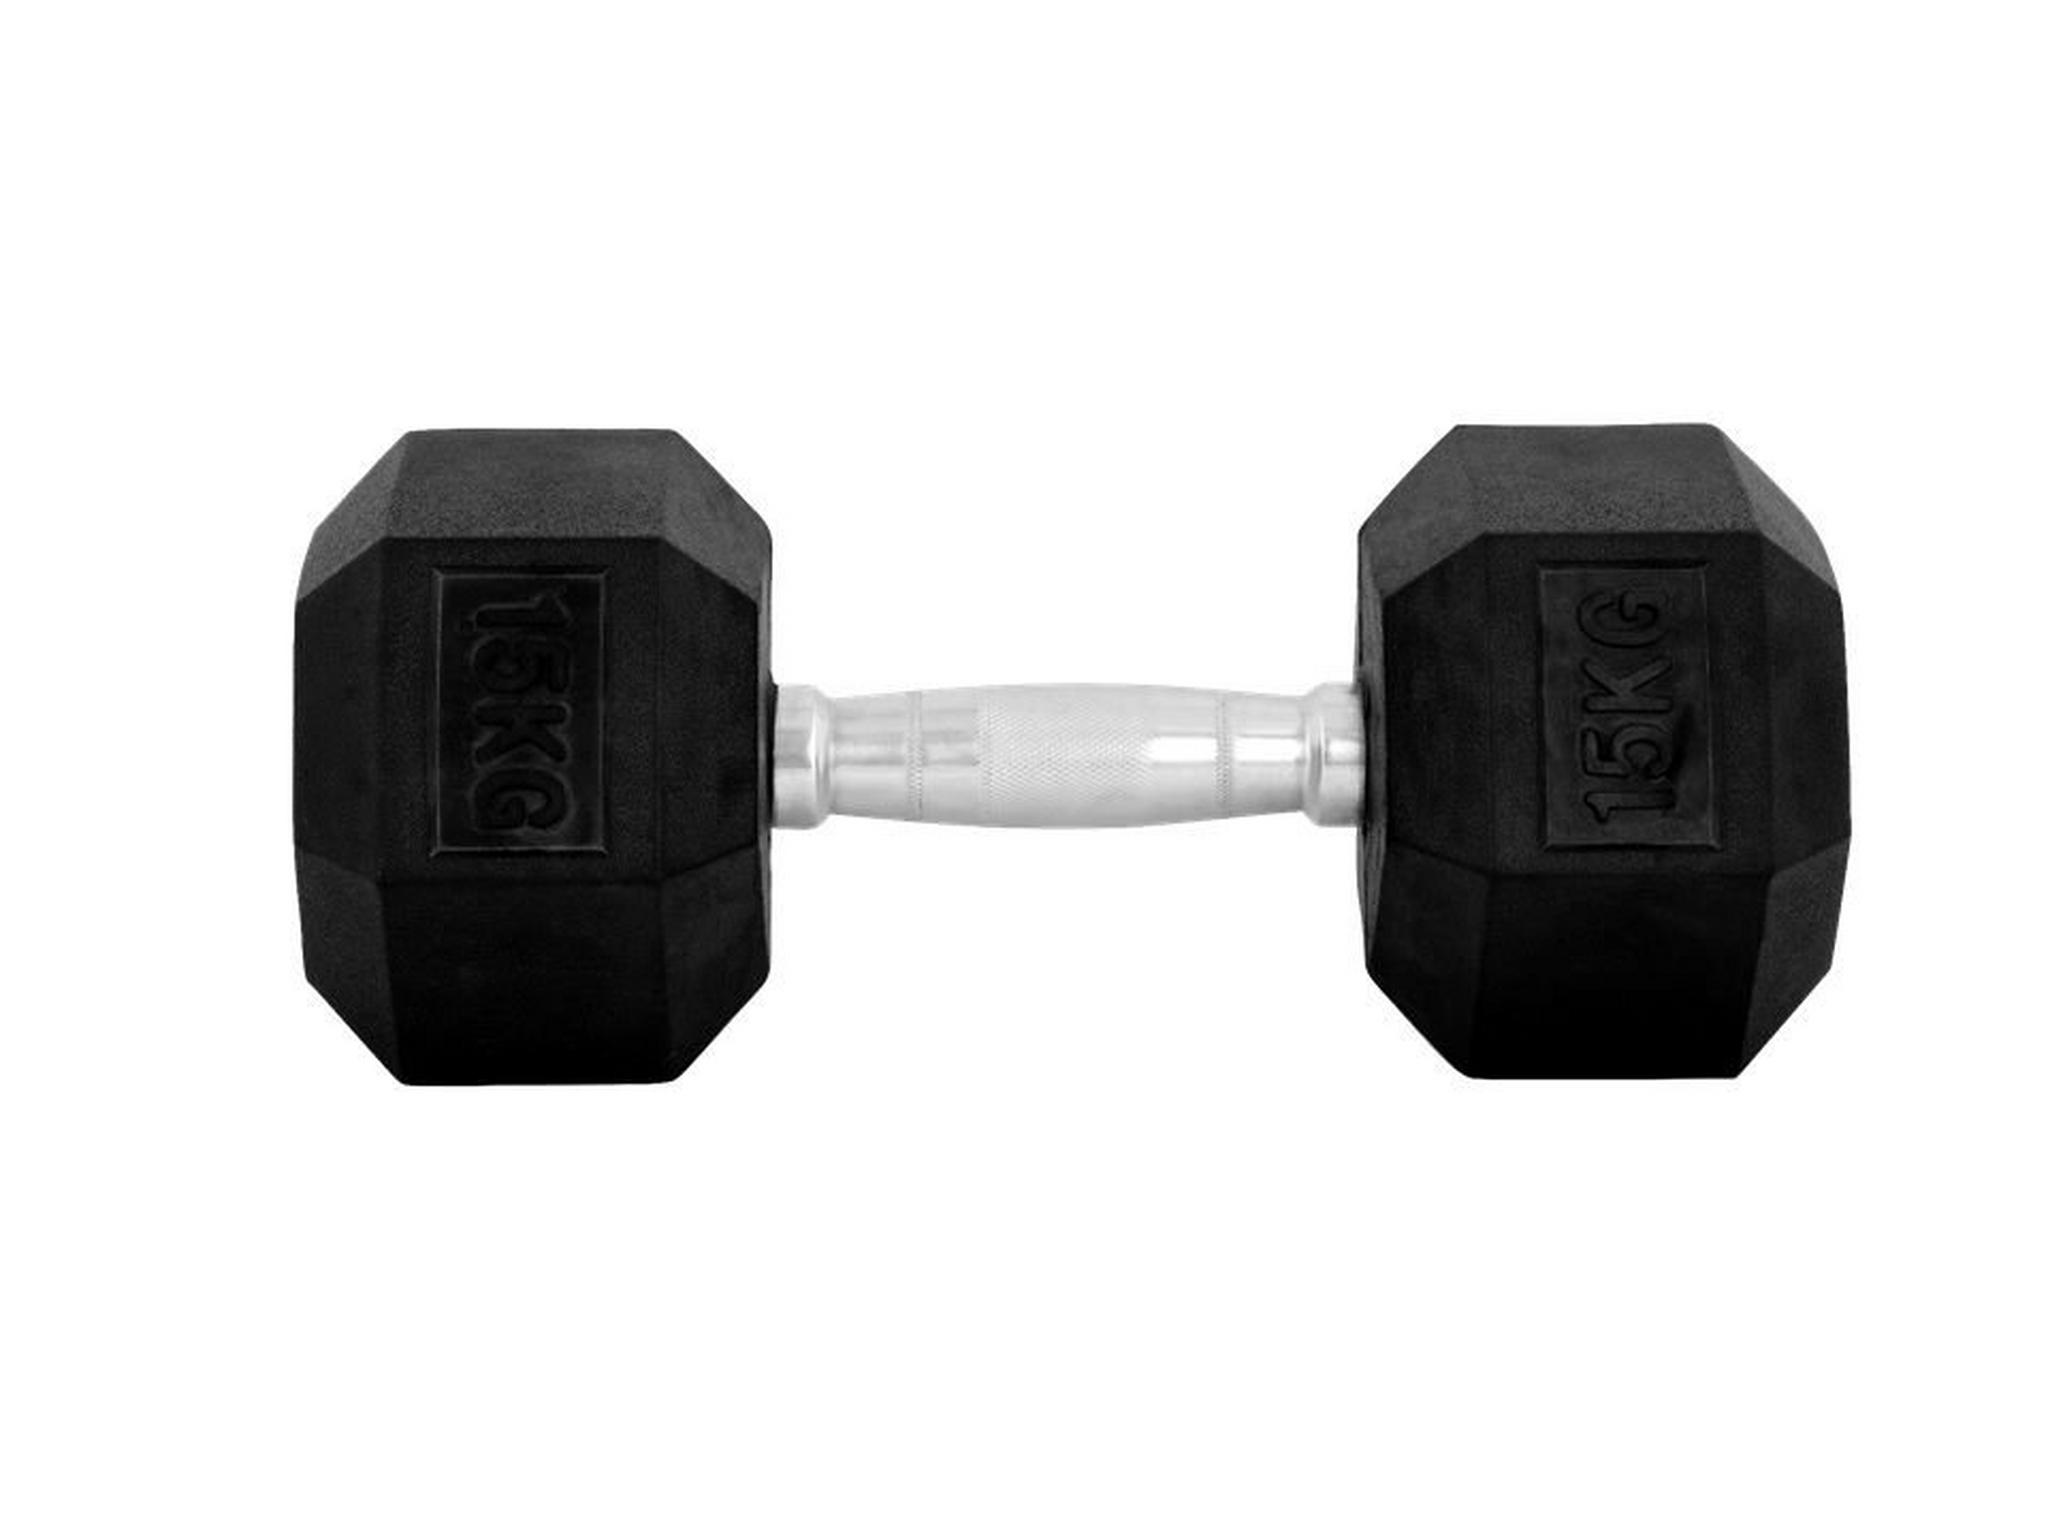 Wansa 15kg Training Dumbbell (DF018) - Black